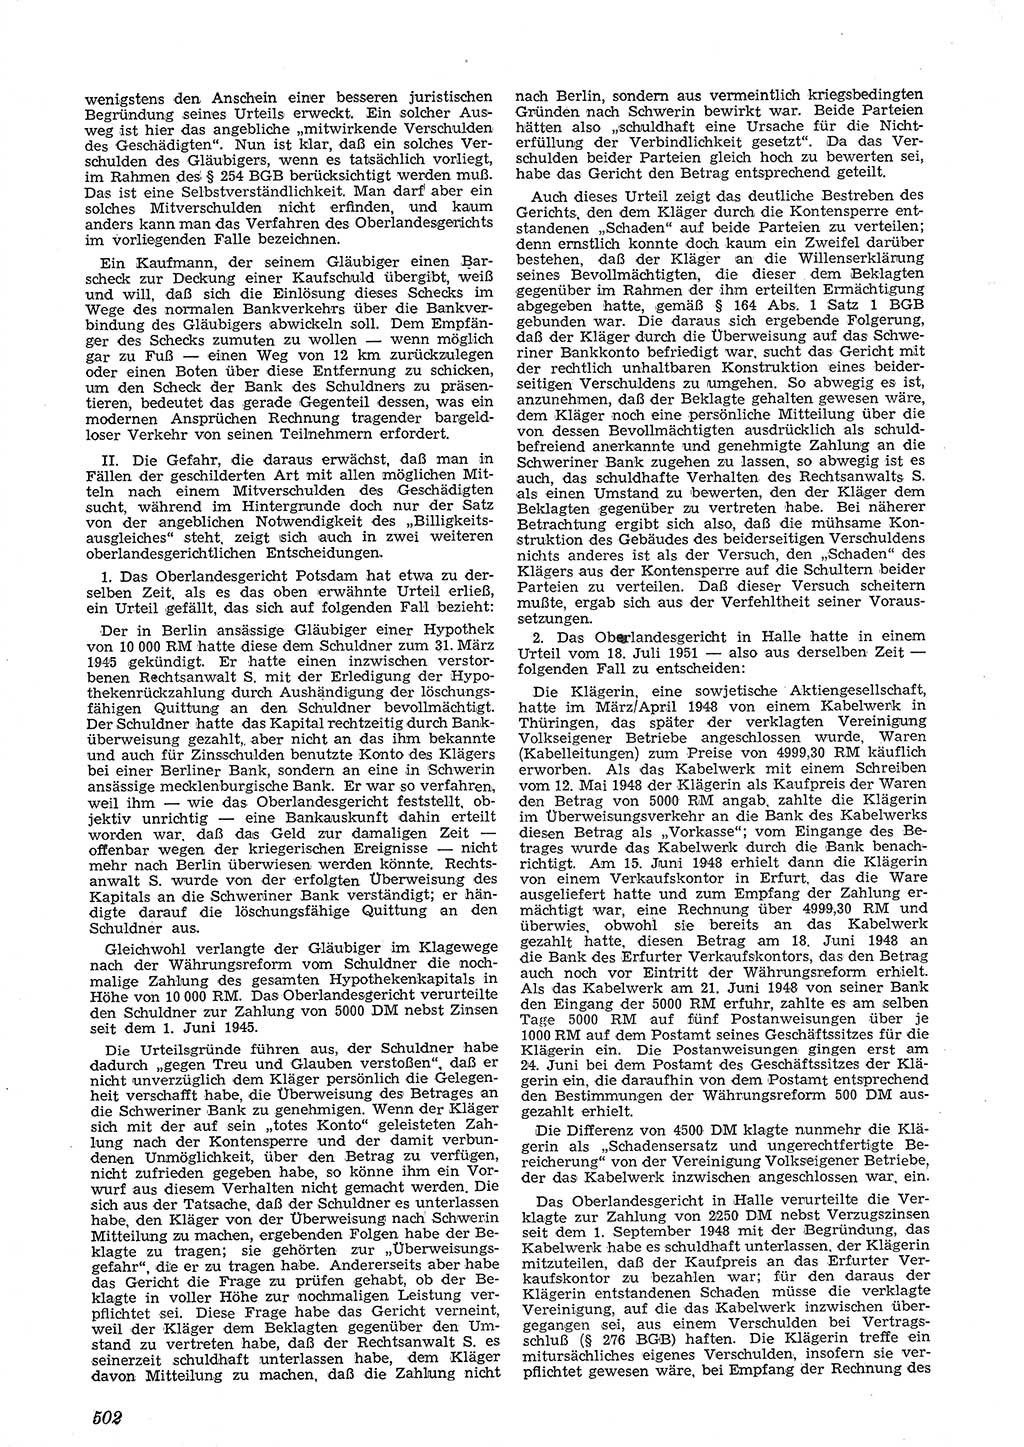 Neue Justiz (NJ), Zeitschrift für Recht und Rechtswissenschaft [Deutsche Demokratische Republik (DDR)], 5. Jahrgang 1951, Seite 502 (NJ DDR 1951, S. 502)